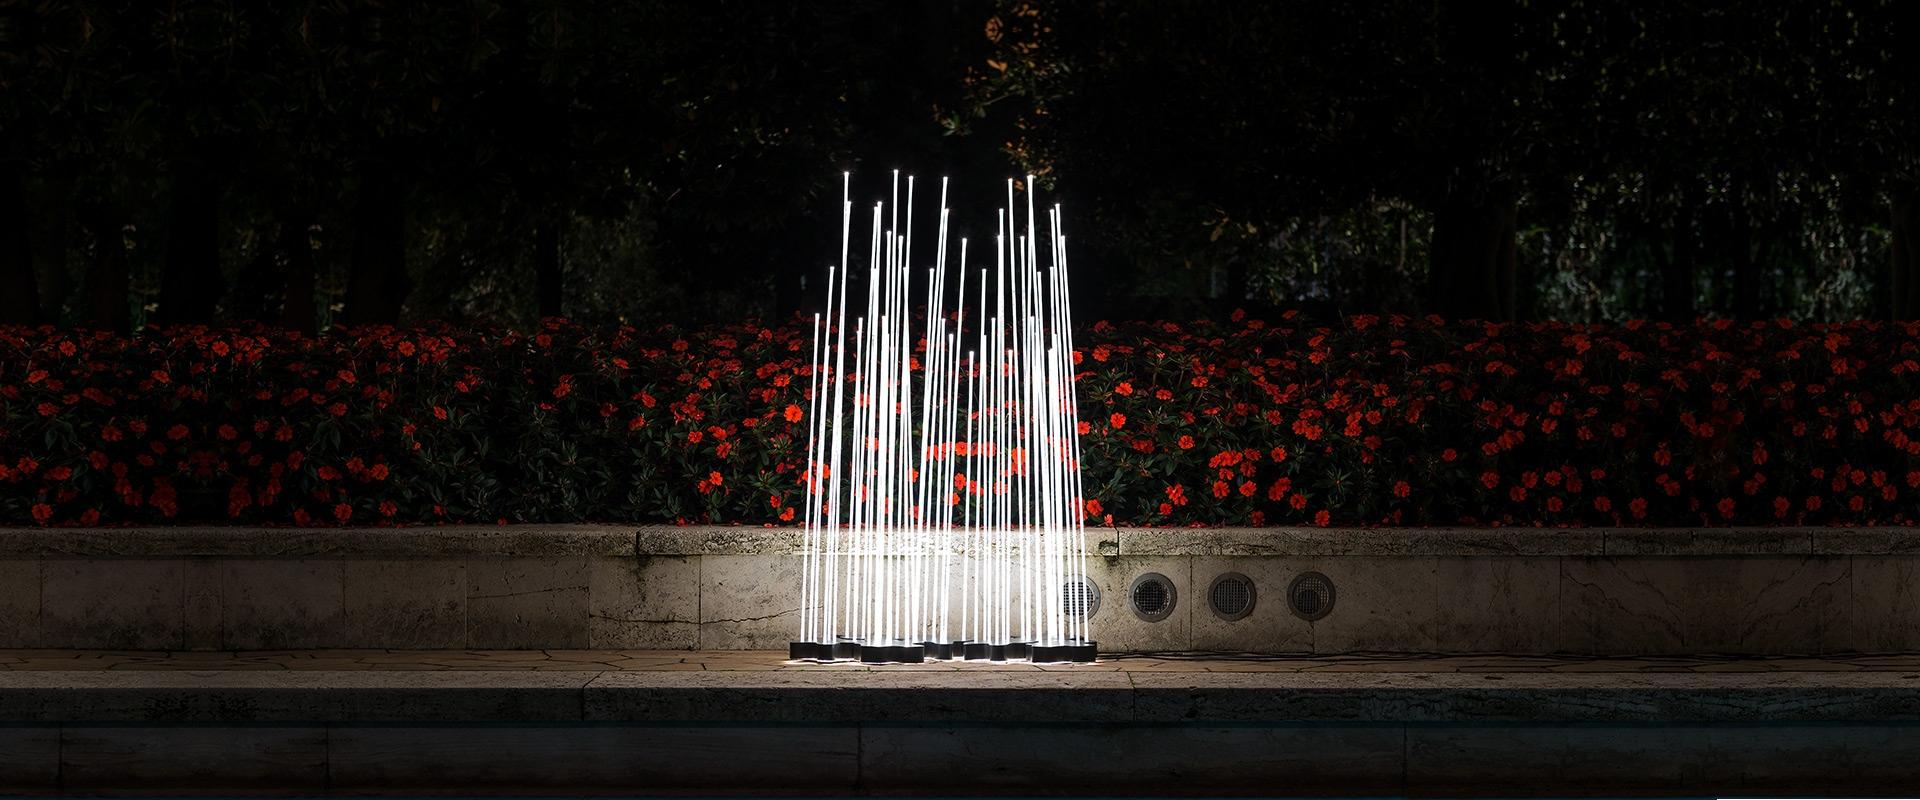 Lampadaire d'intérieur ou d'extérieur 'Reeds Triple' de Klaus Begasse pour Artemide. 

Cette lampe sculpturale se compose d'une base constituée d'un boîtier en polycarbonate transparent installé entre 2 plaques en acier inoxydable fixées à l'aide de